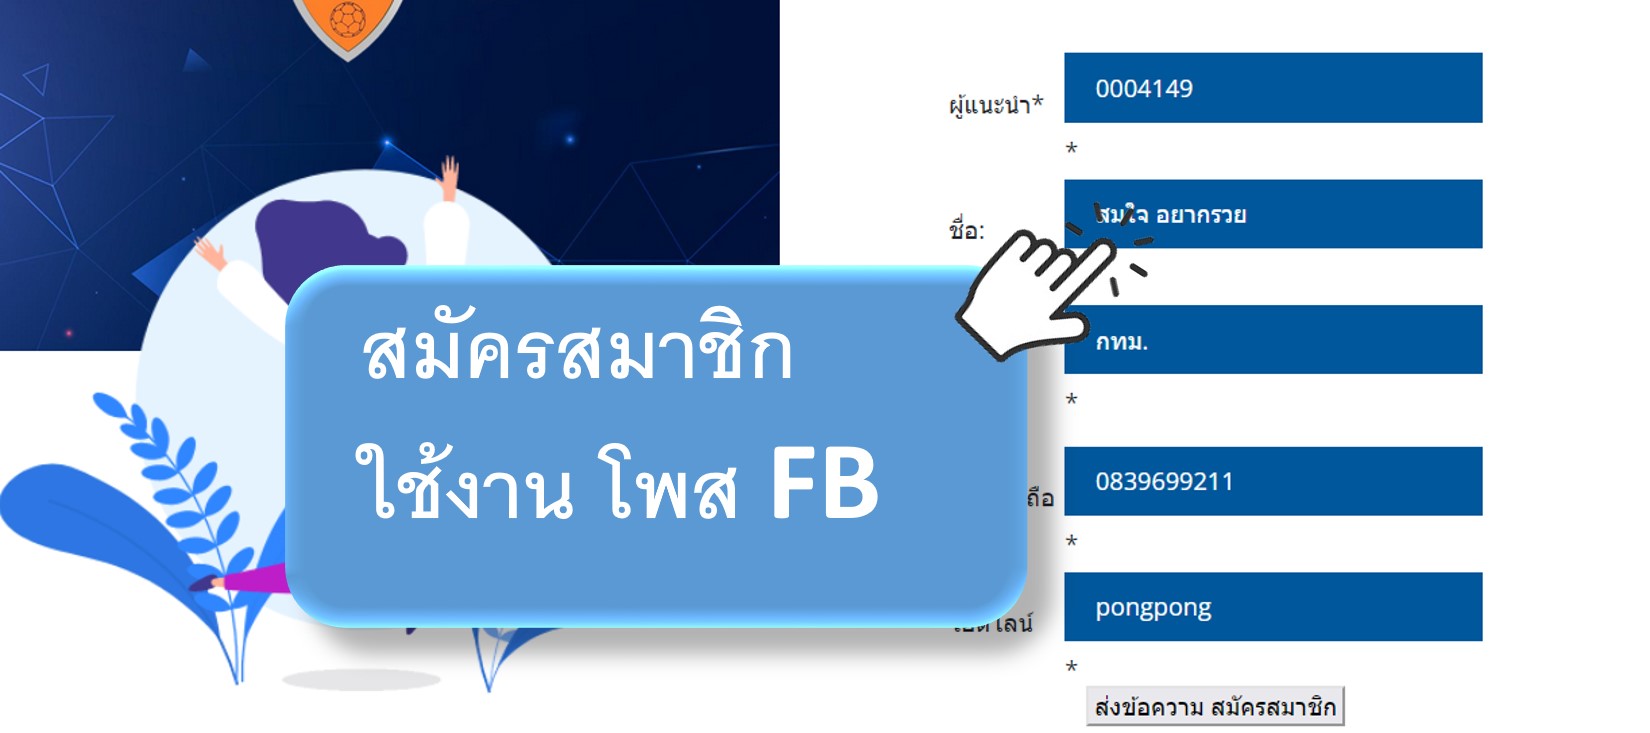 โปรแกรมโพส FB,โปรแกรมโพสเฟสบุ๊ค,โปรแกรมโพส,โปรแกรมโพส Facebook,โปรแกรม Inbox,โปรแกรมหาเพื่อน